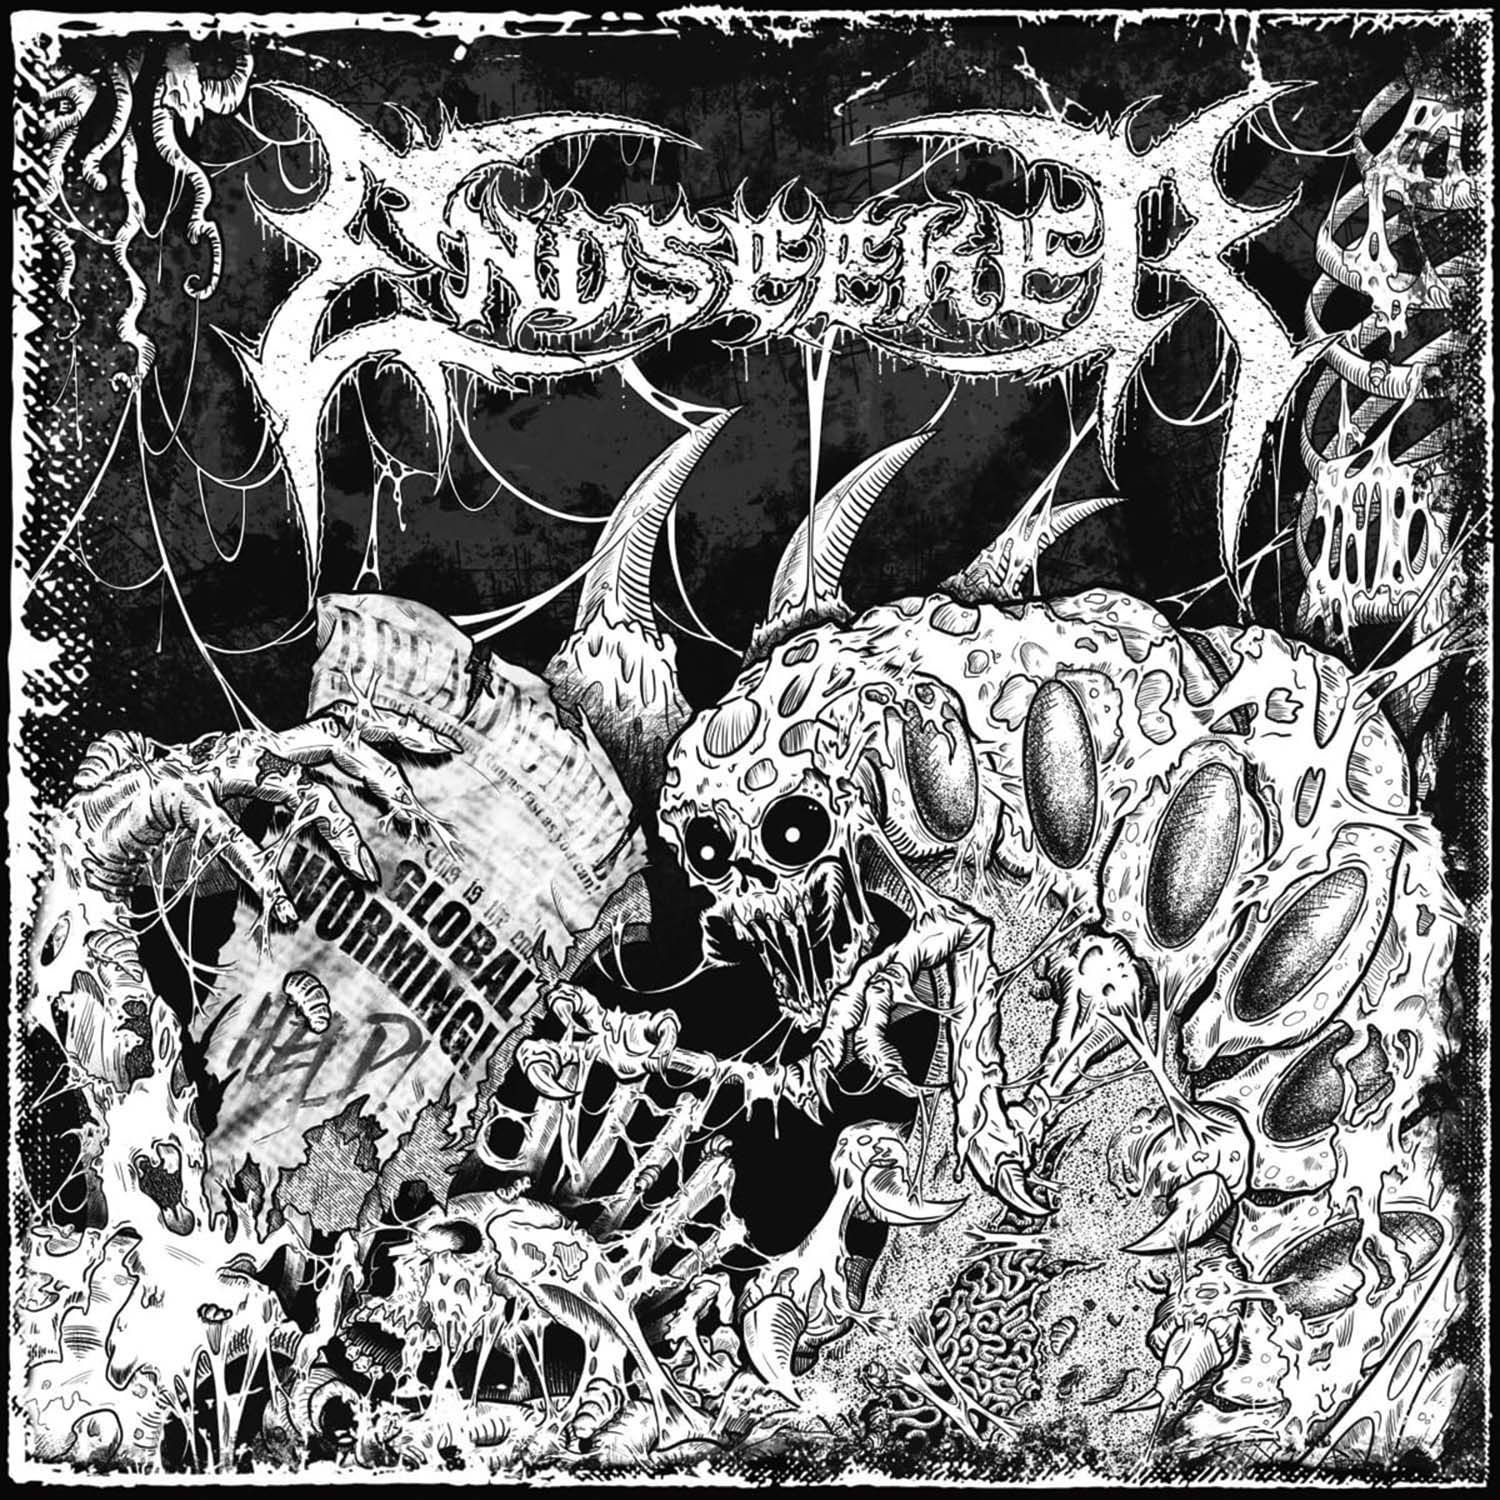 Endseeker - Global Worming - Cover